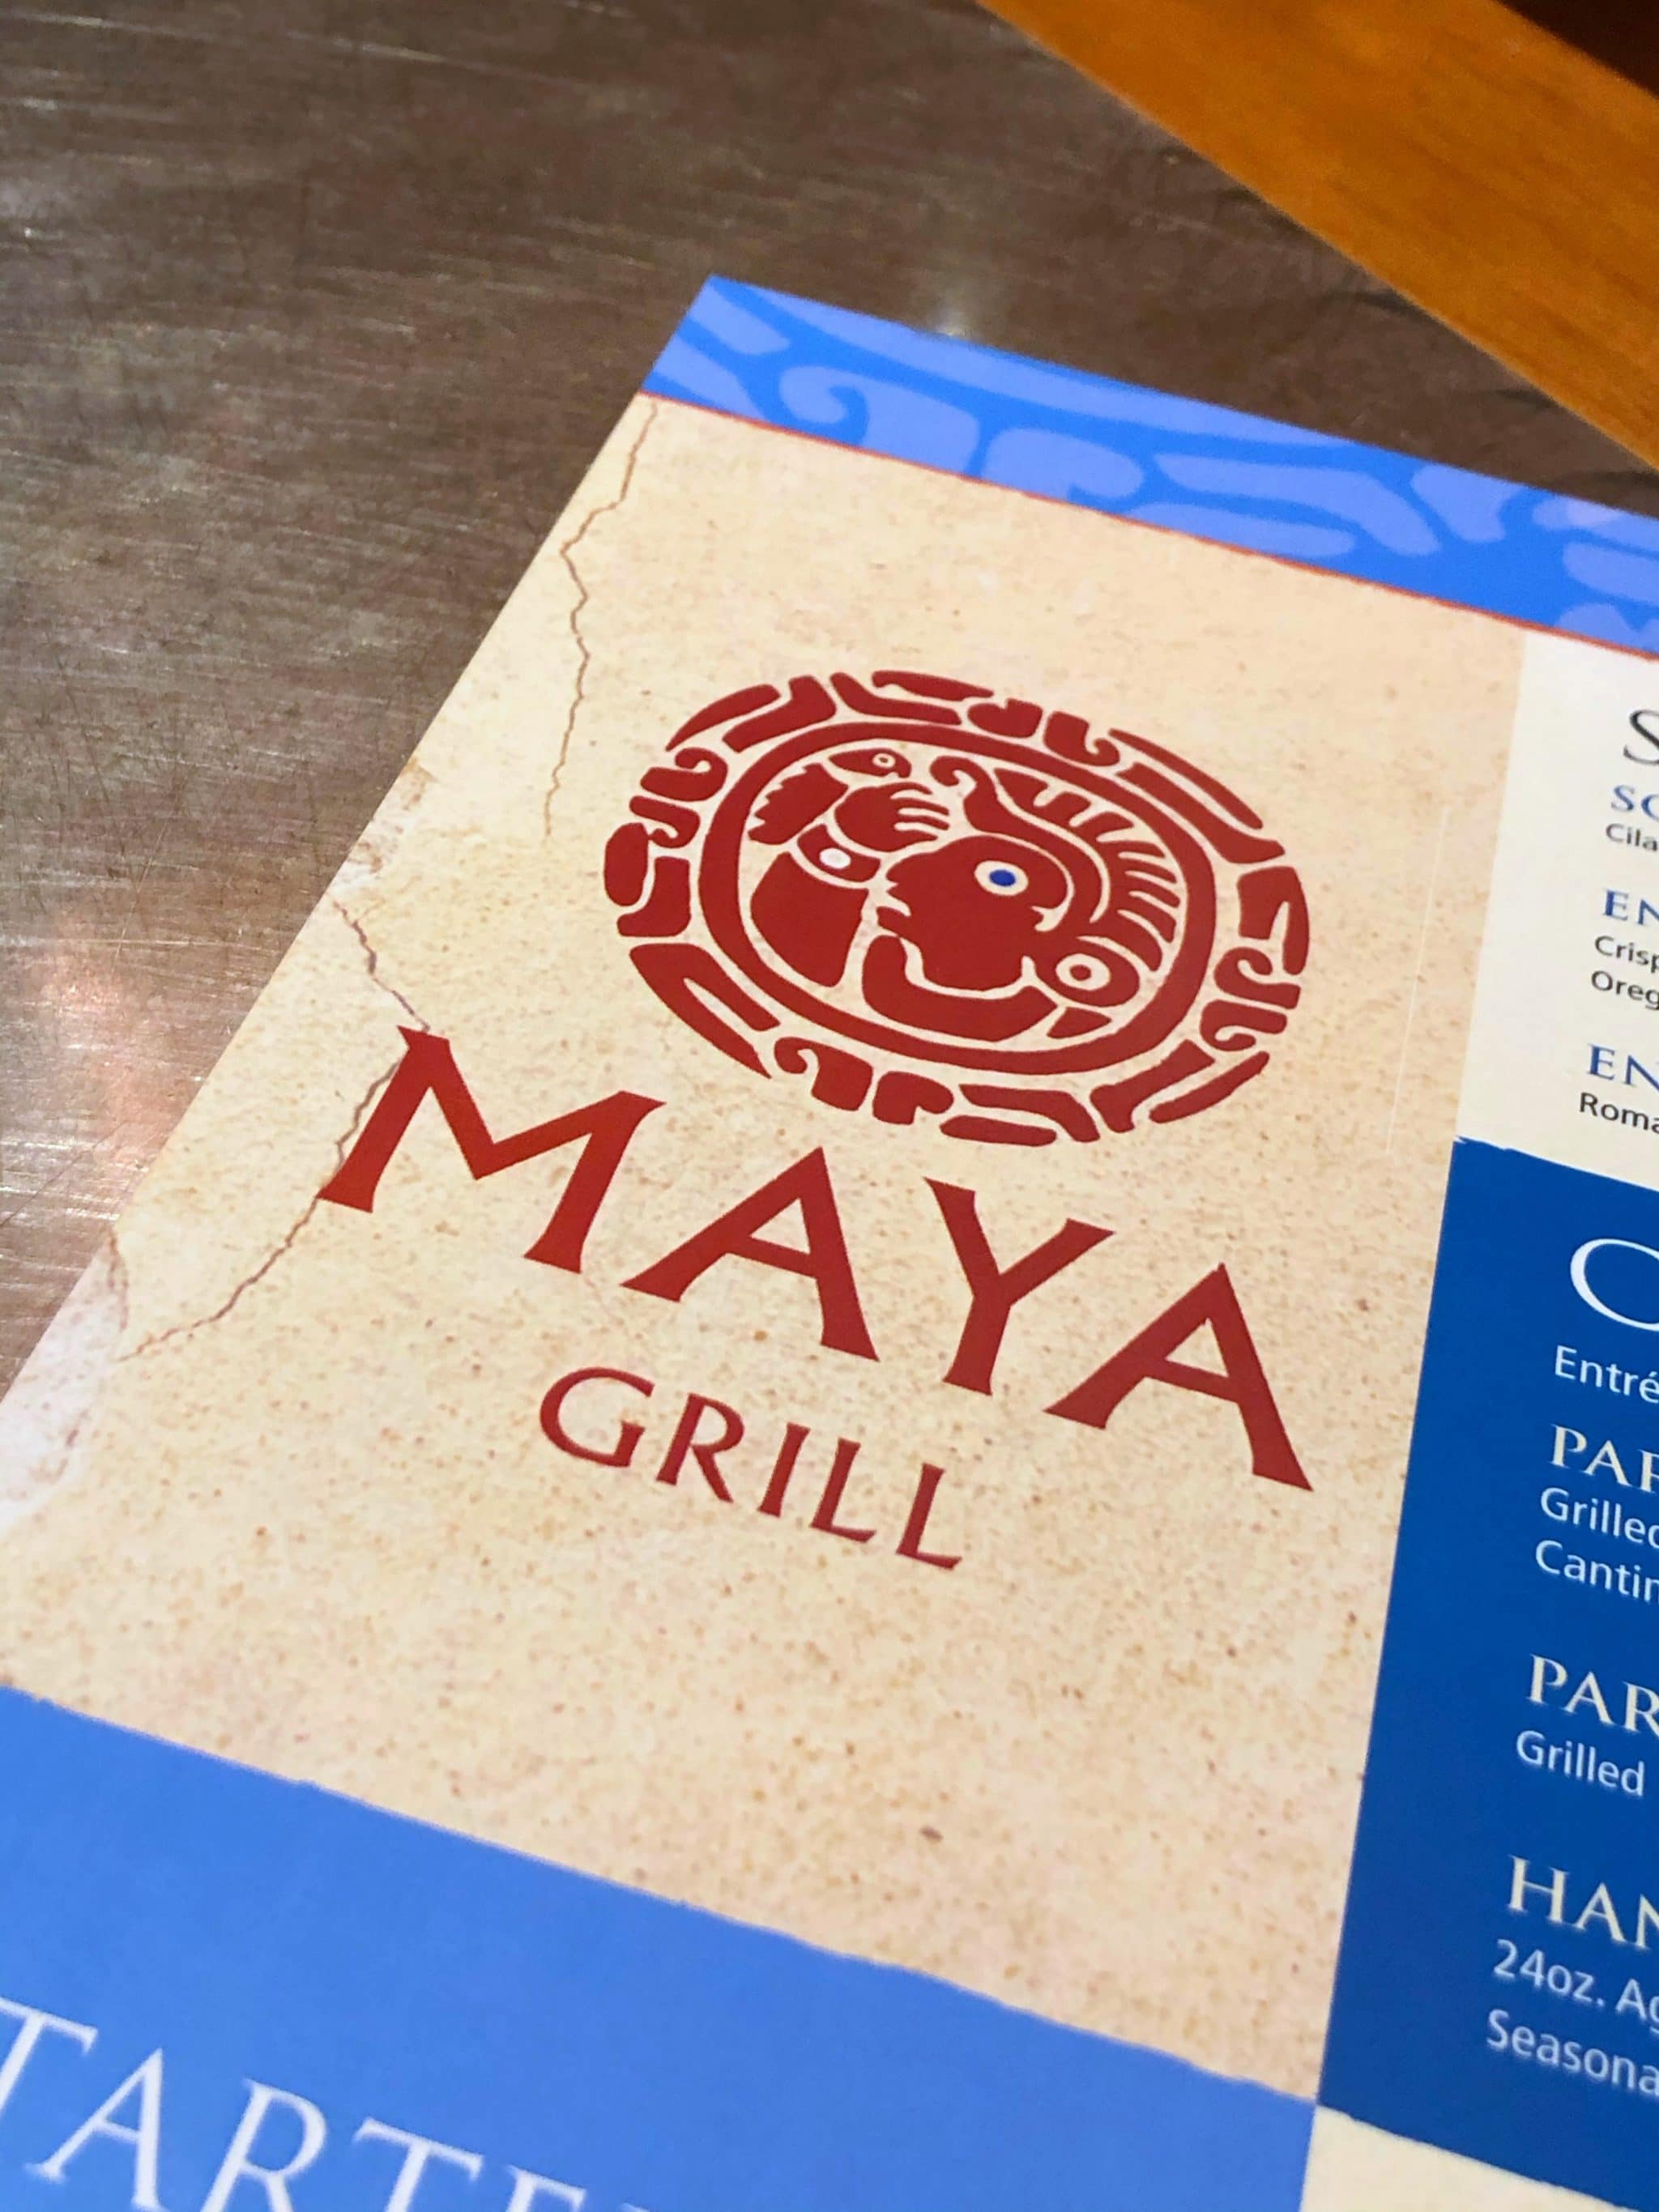 Maya Grill Vegan Dinner Review at Disney’s Coronado Springs Resort in Walt Disney World